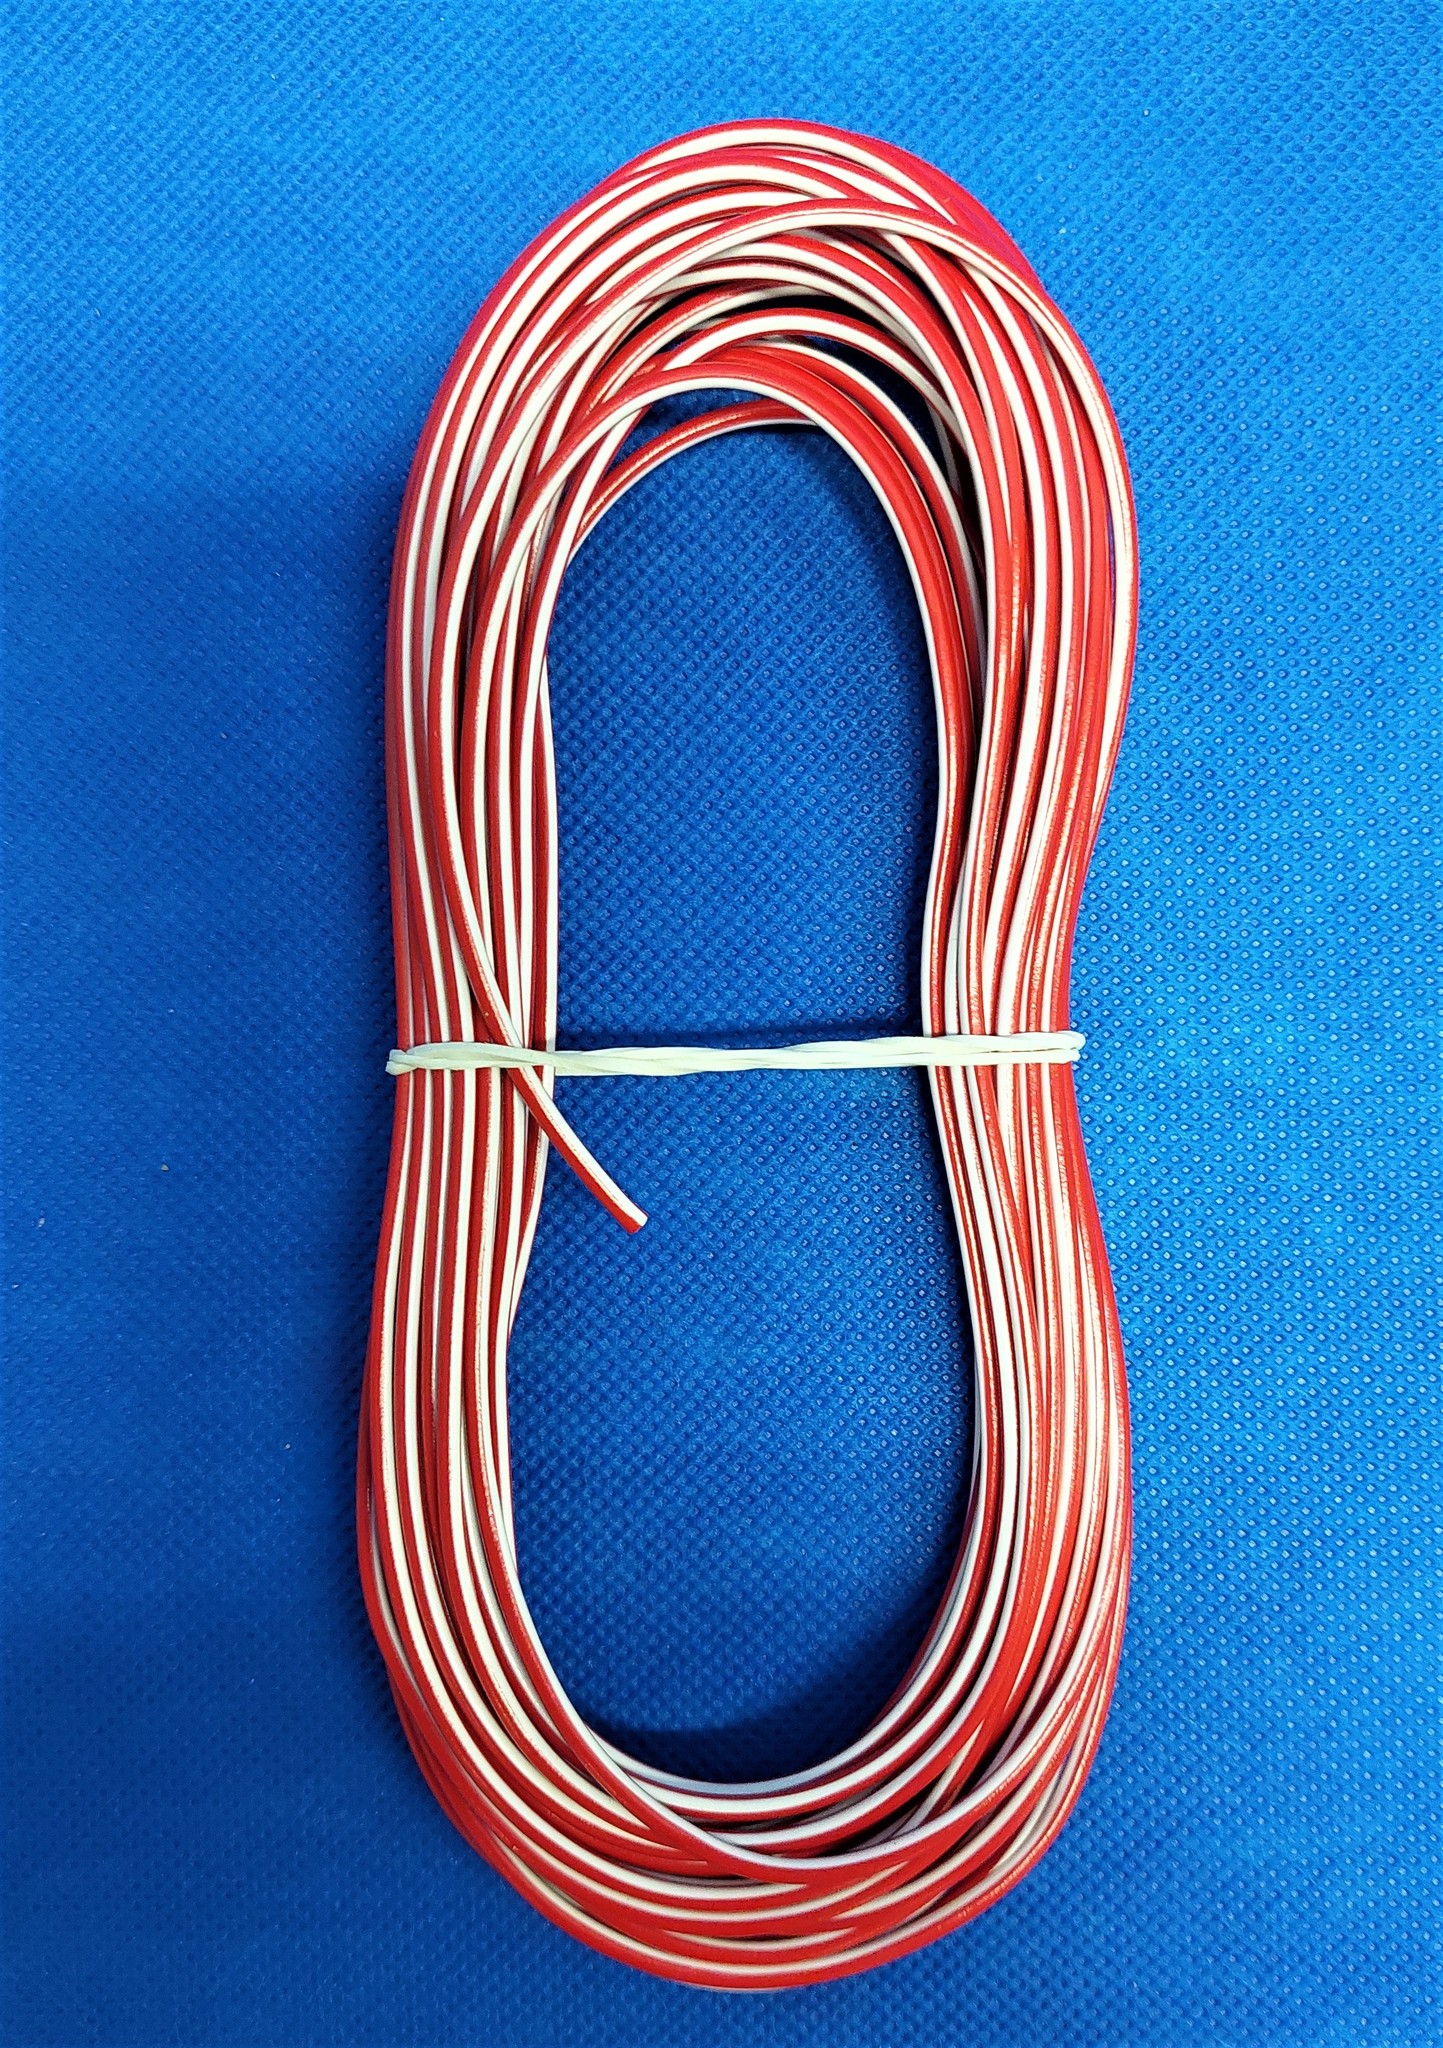 FLRY-B kabel 1,5mm2 - automotive - voertuigkabel Kleur ROOD/WIT 